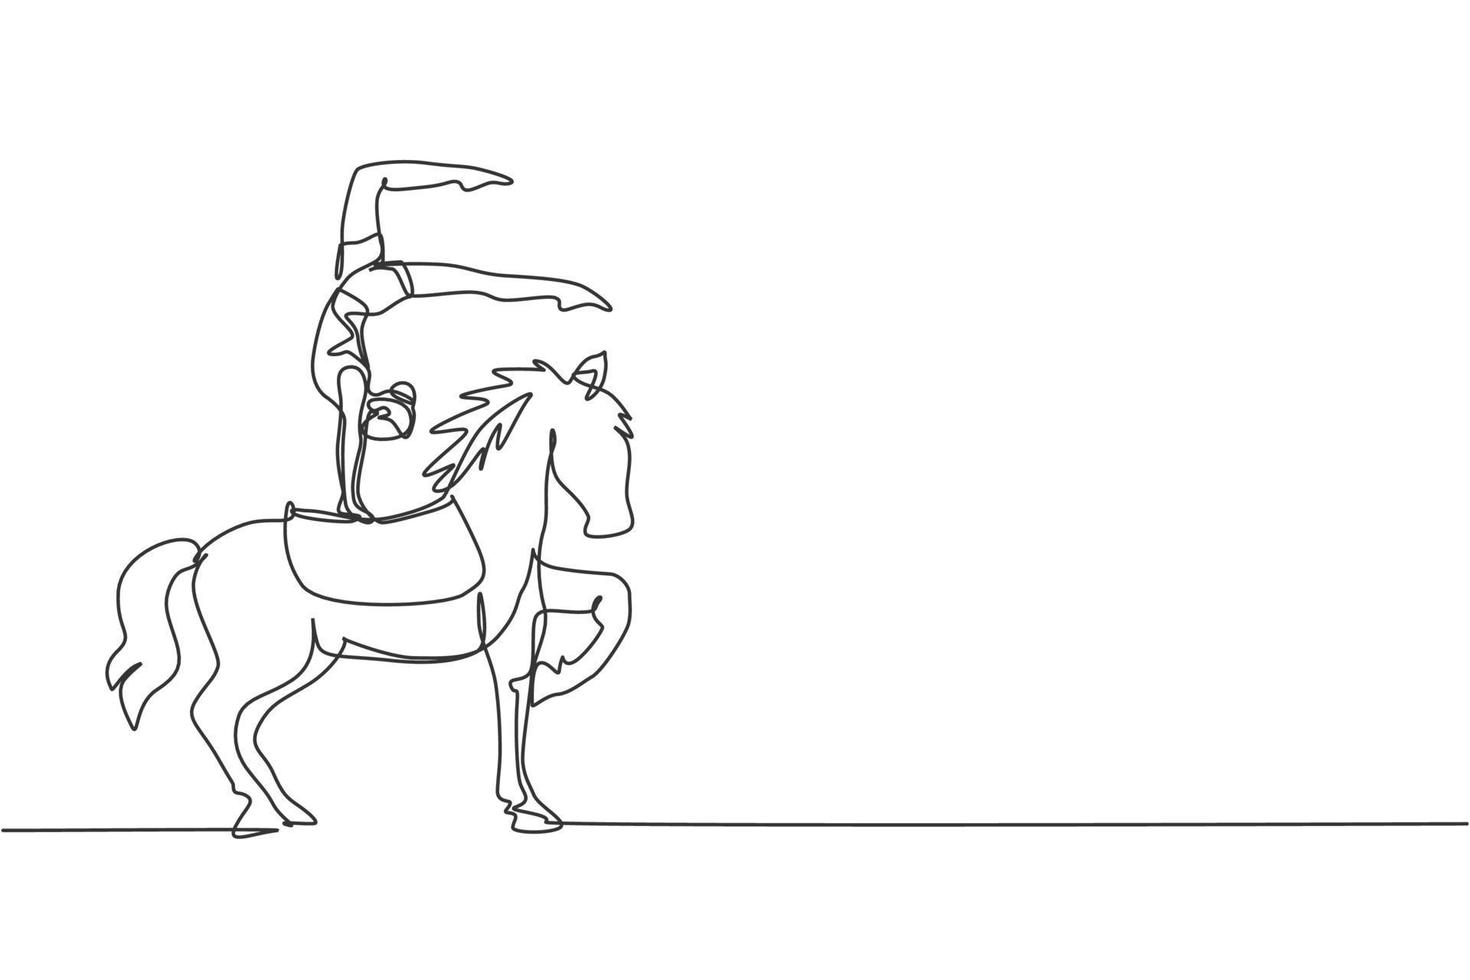 dibujo continuo de una línea, una acróbata femenina se presenta en un caballo de circo mientras realiza una danza de pie a caballo. el caballo levantando una de sus patas. Ilustración de vector de diseño de dibujo de una sola línea